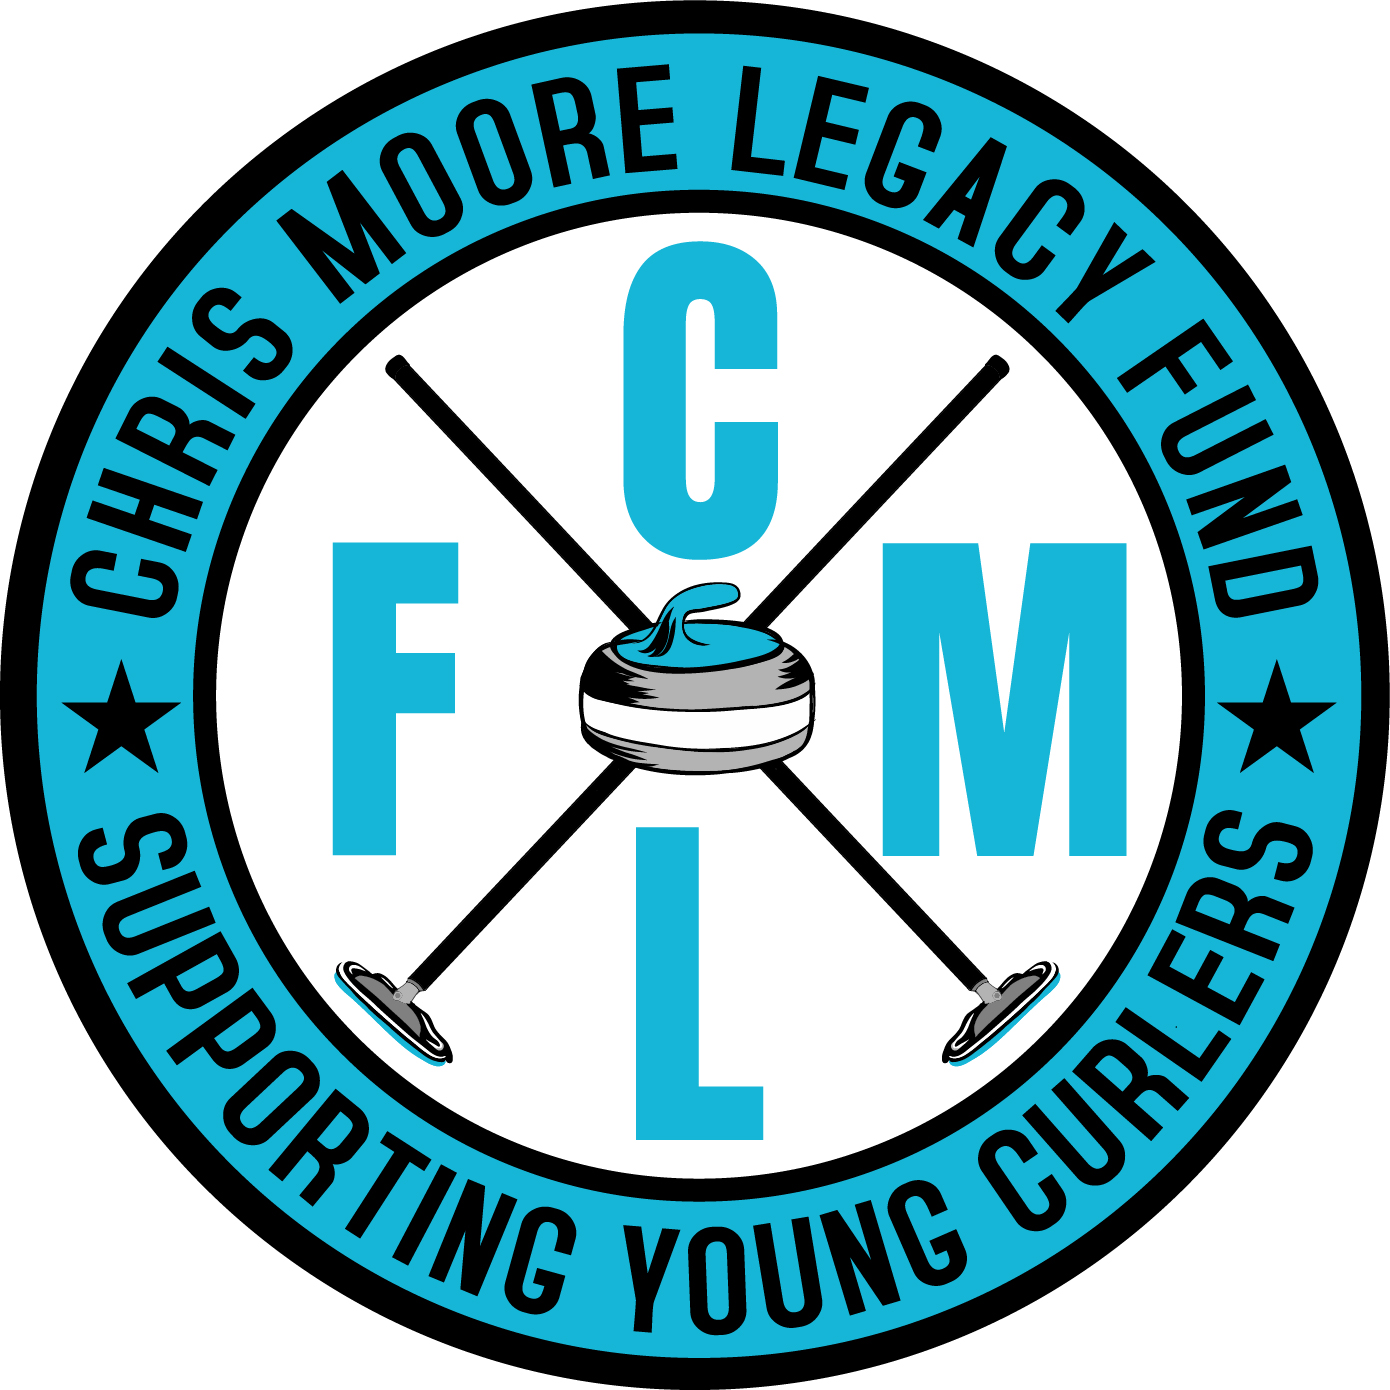 Chris Moore Legacy Fund